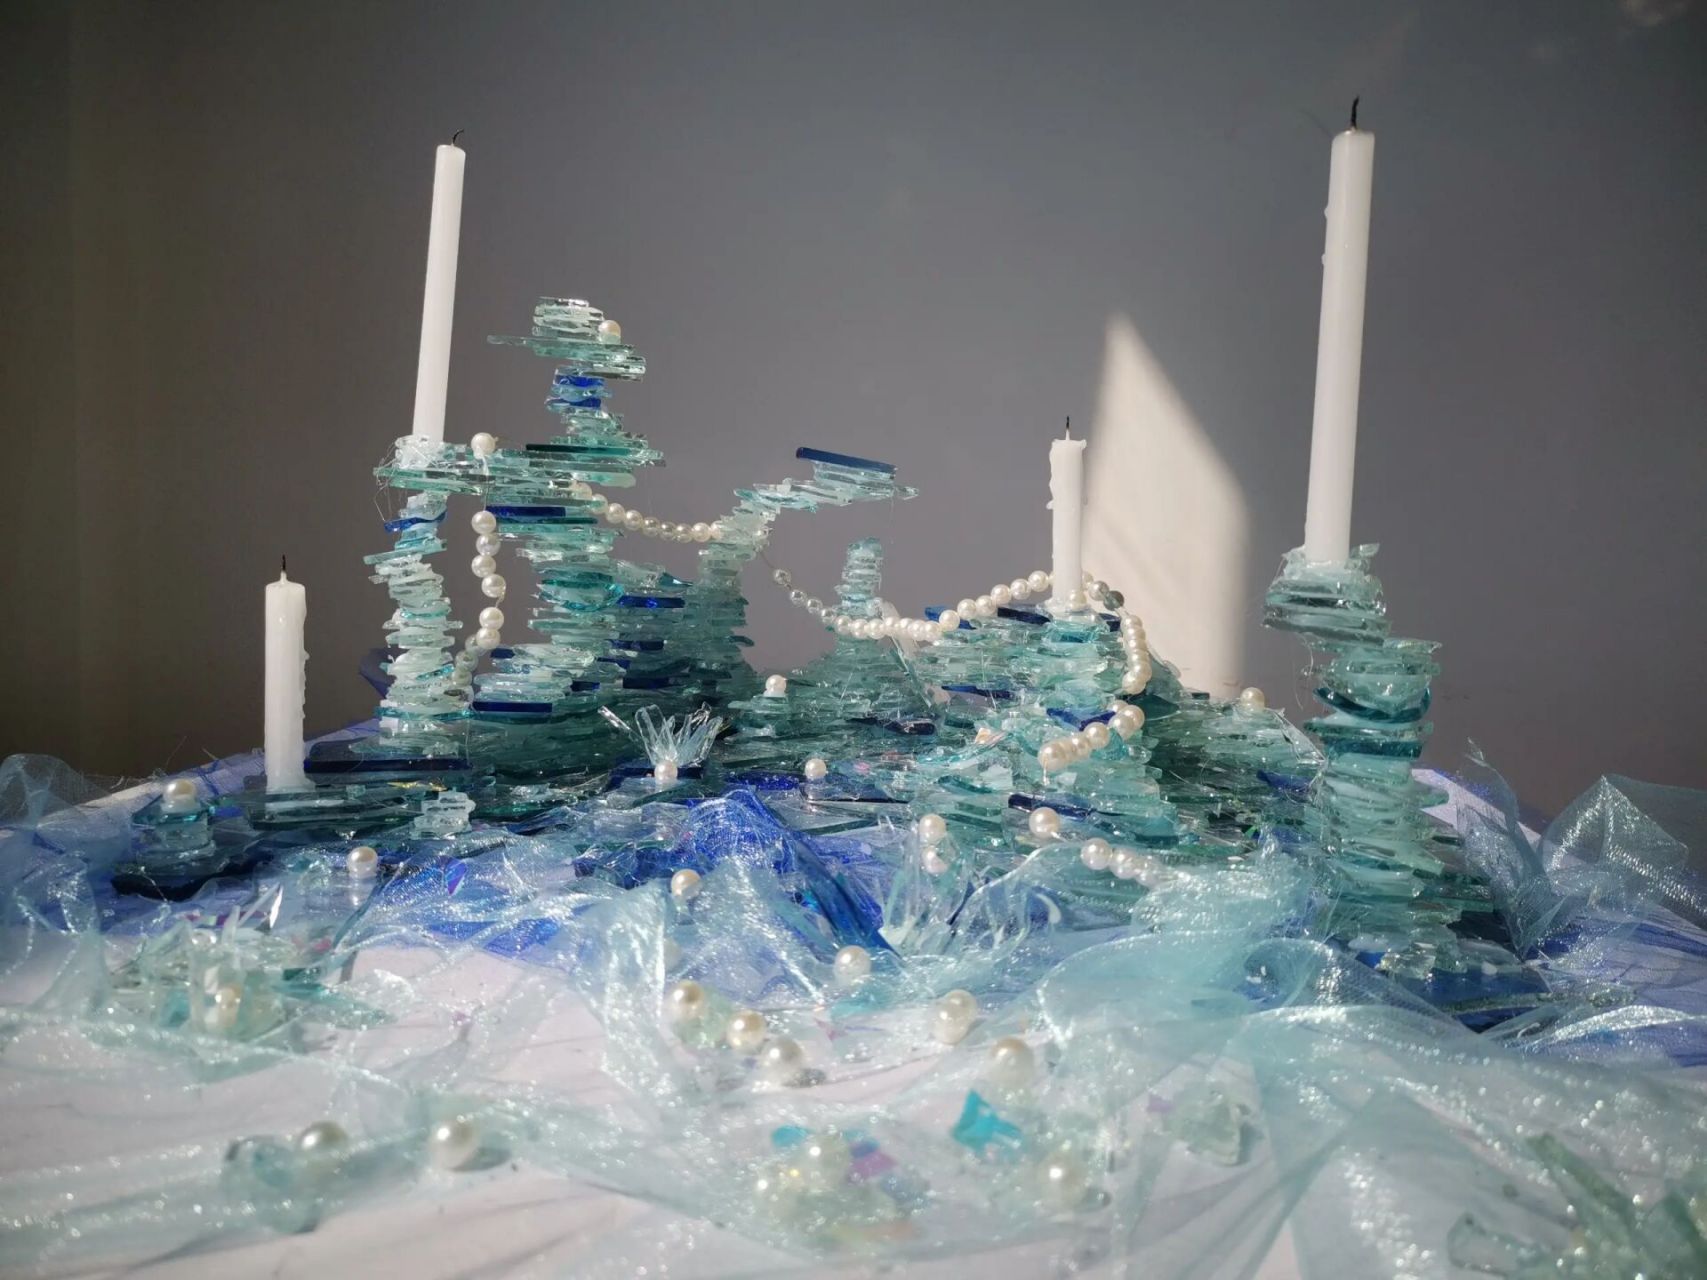 立构小组作业出 立体构成三人大作业,60×60(厘米)玻璃烛台,主题景观